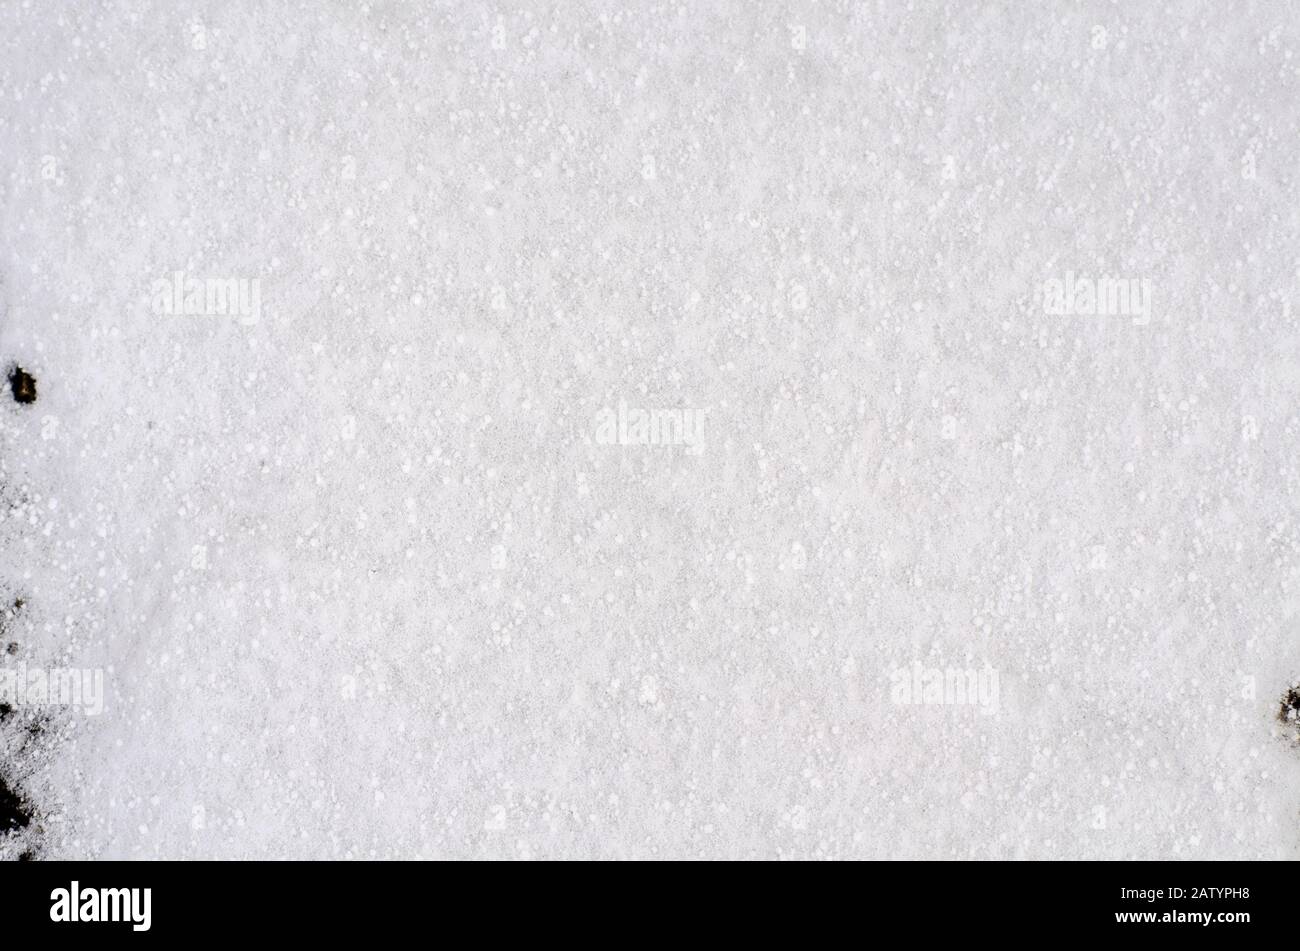 Hintergrund von Neuschnee Weiß natürliches Texturmuster für minimalistisches Design in Grautönen. Draufsicht mit Schneeflocken und großen Getreidearten. Konzept von ab Stockfoto